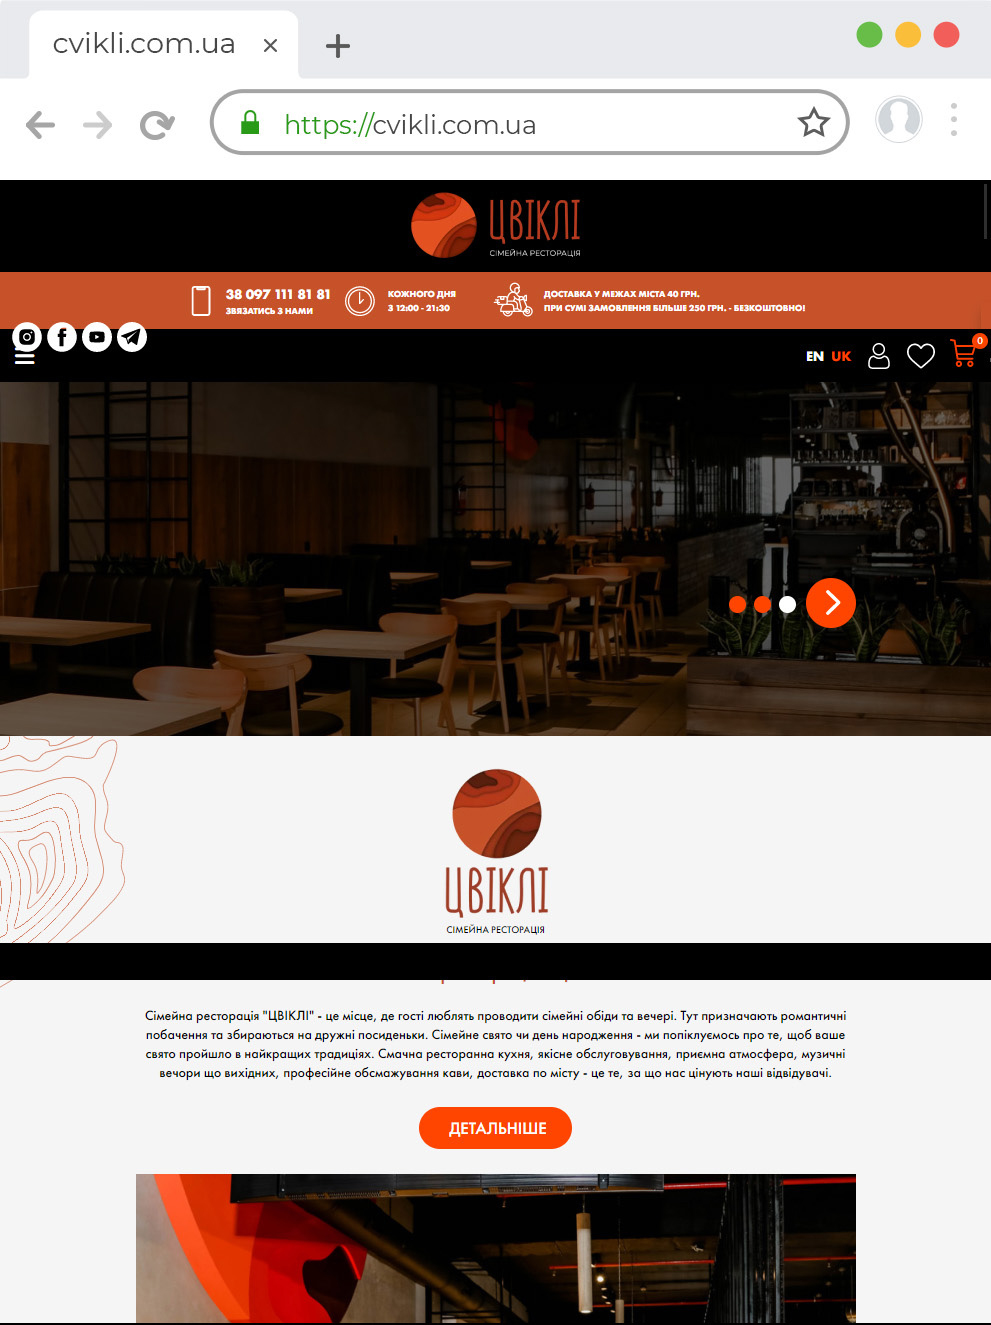 Creation of a website for the Family Restaurant "ZVIKLI"